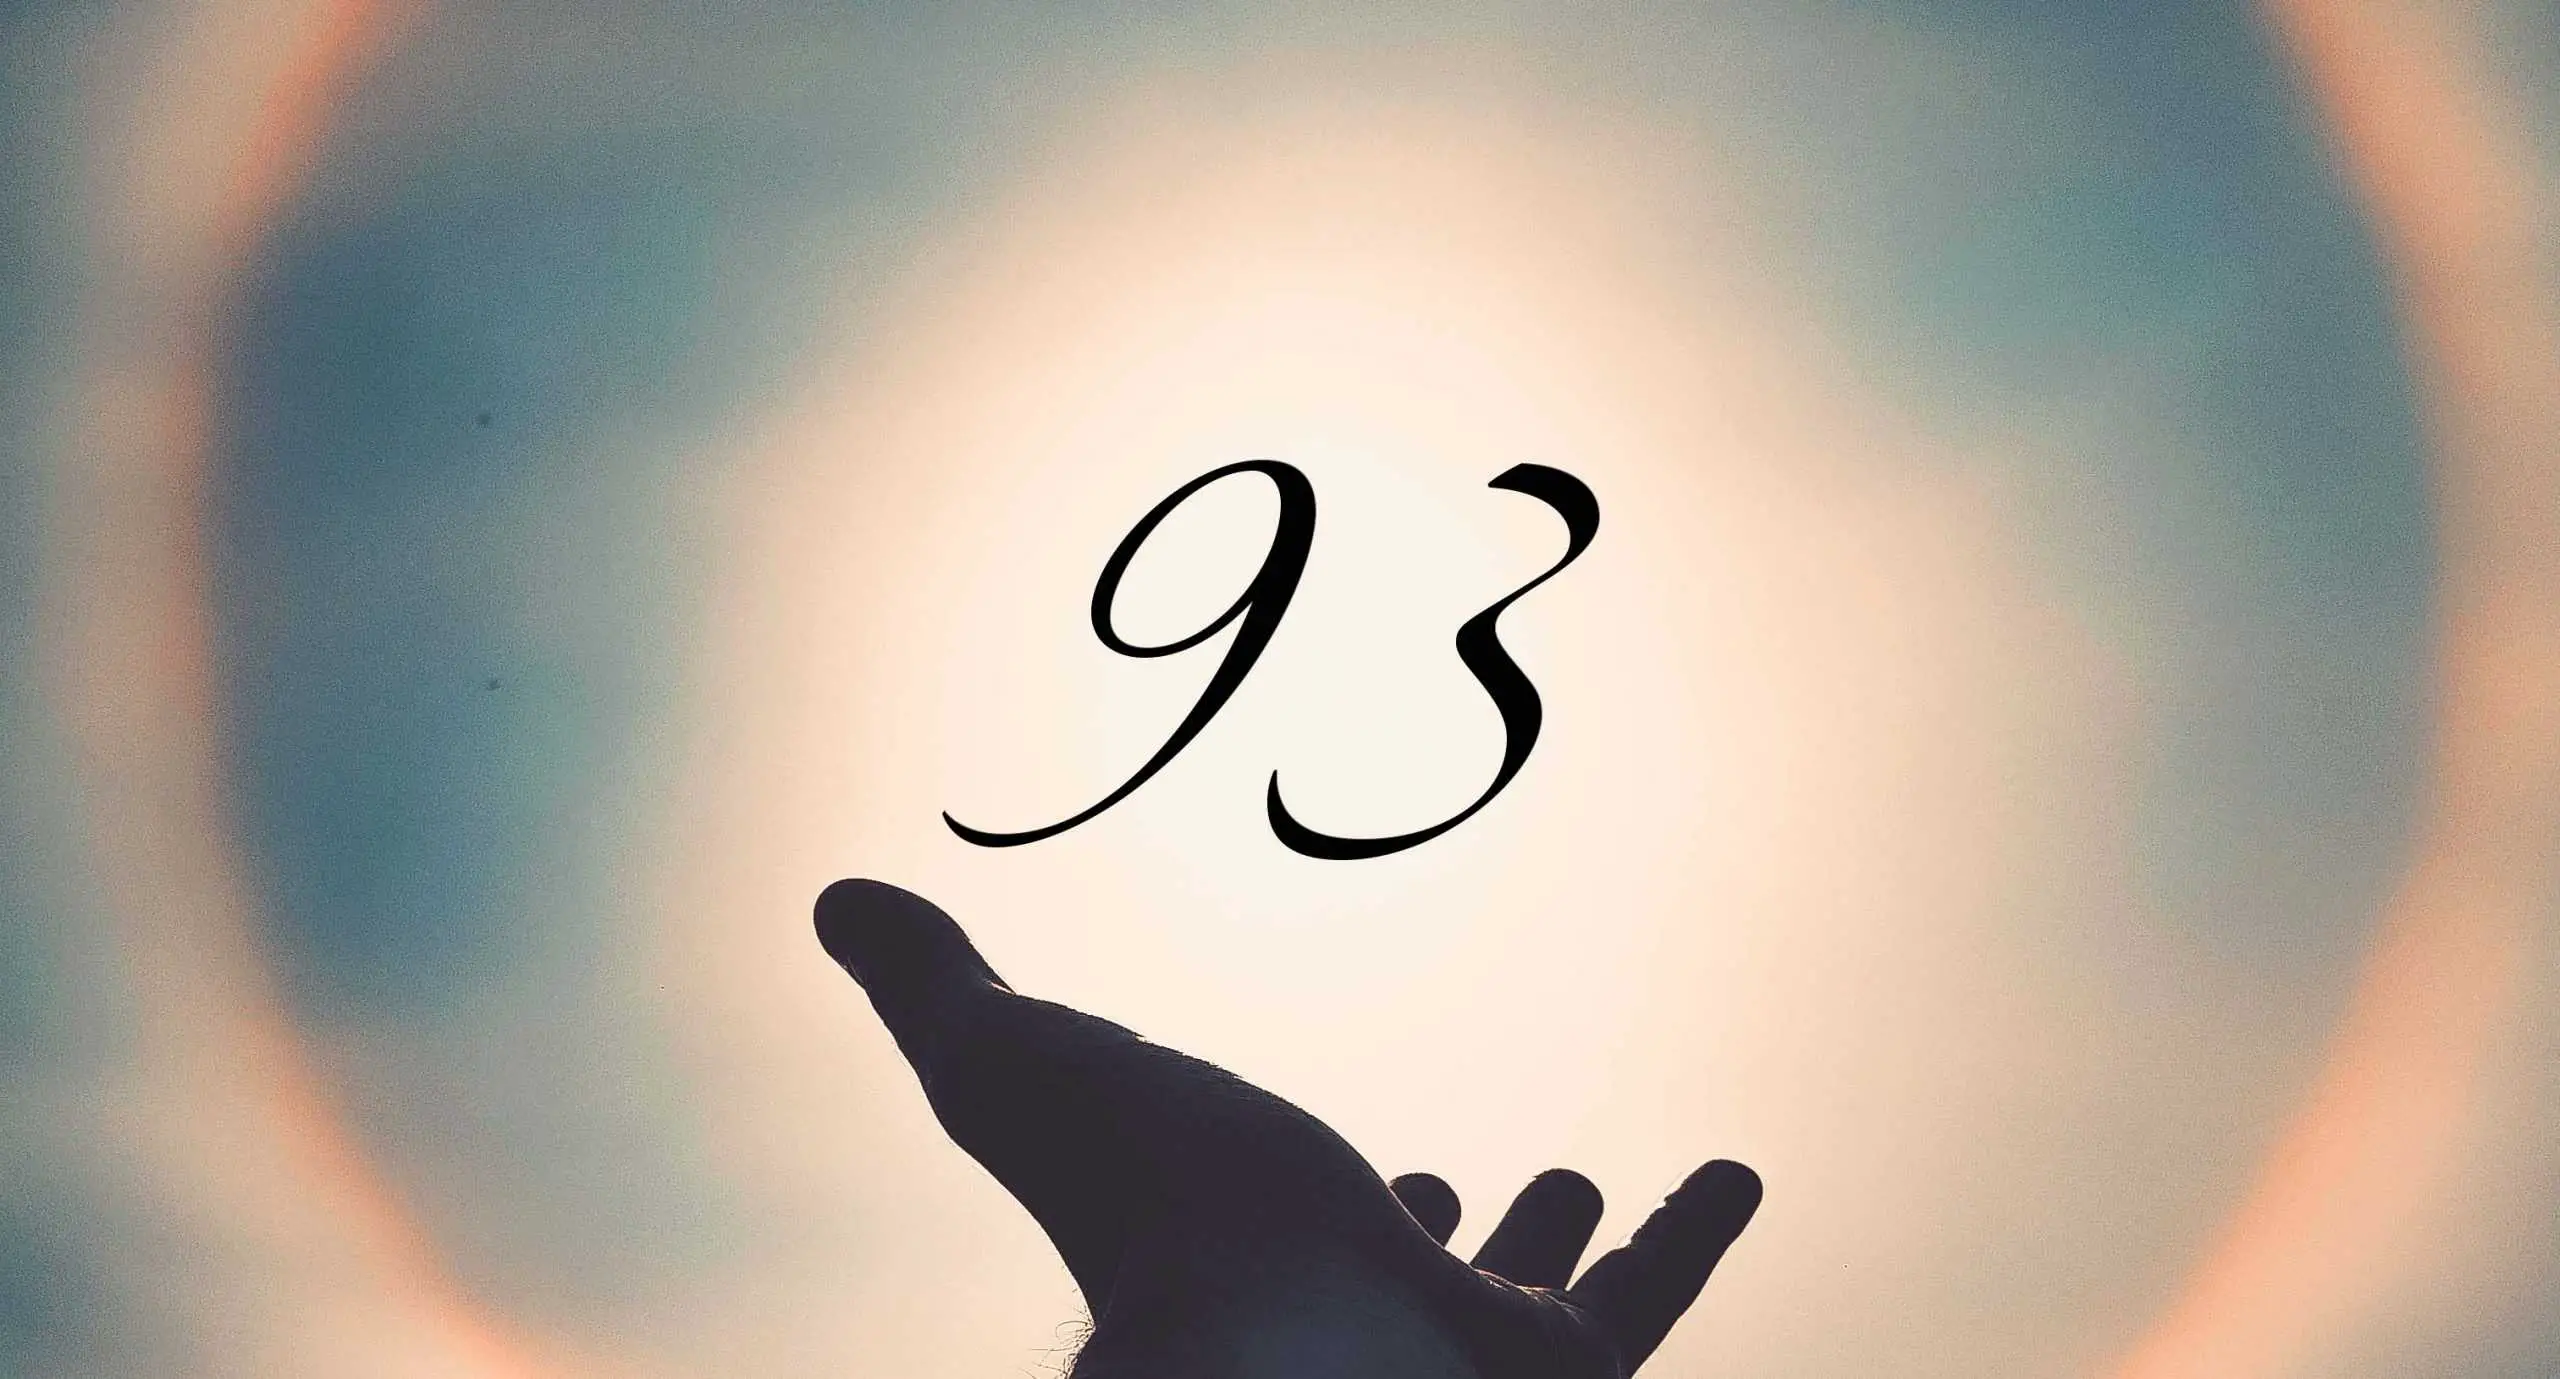 Signification du nombre 93